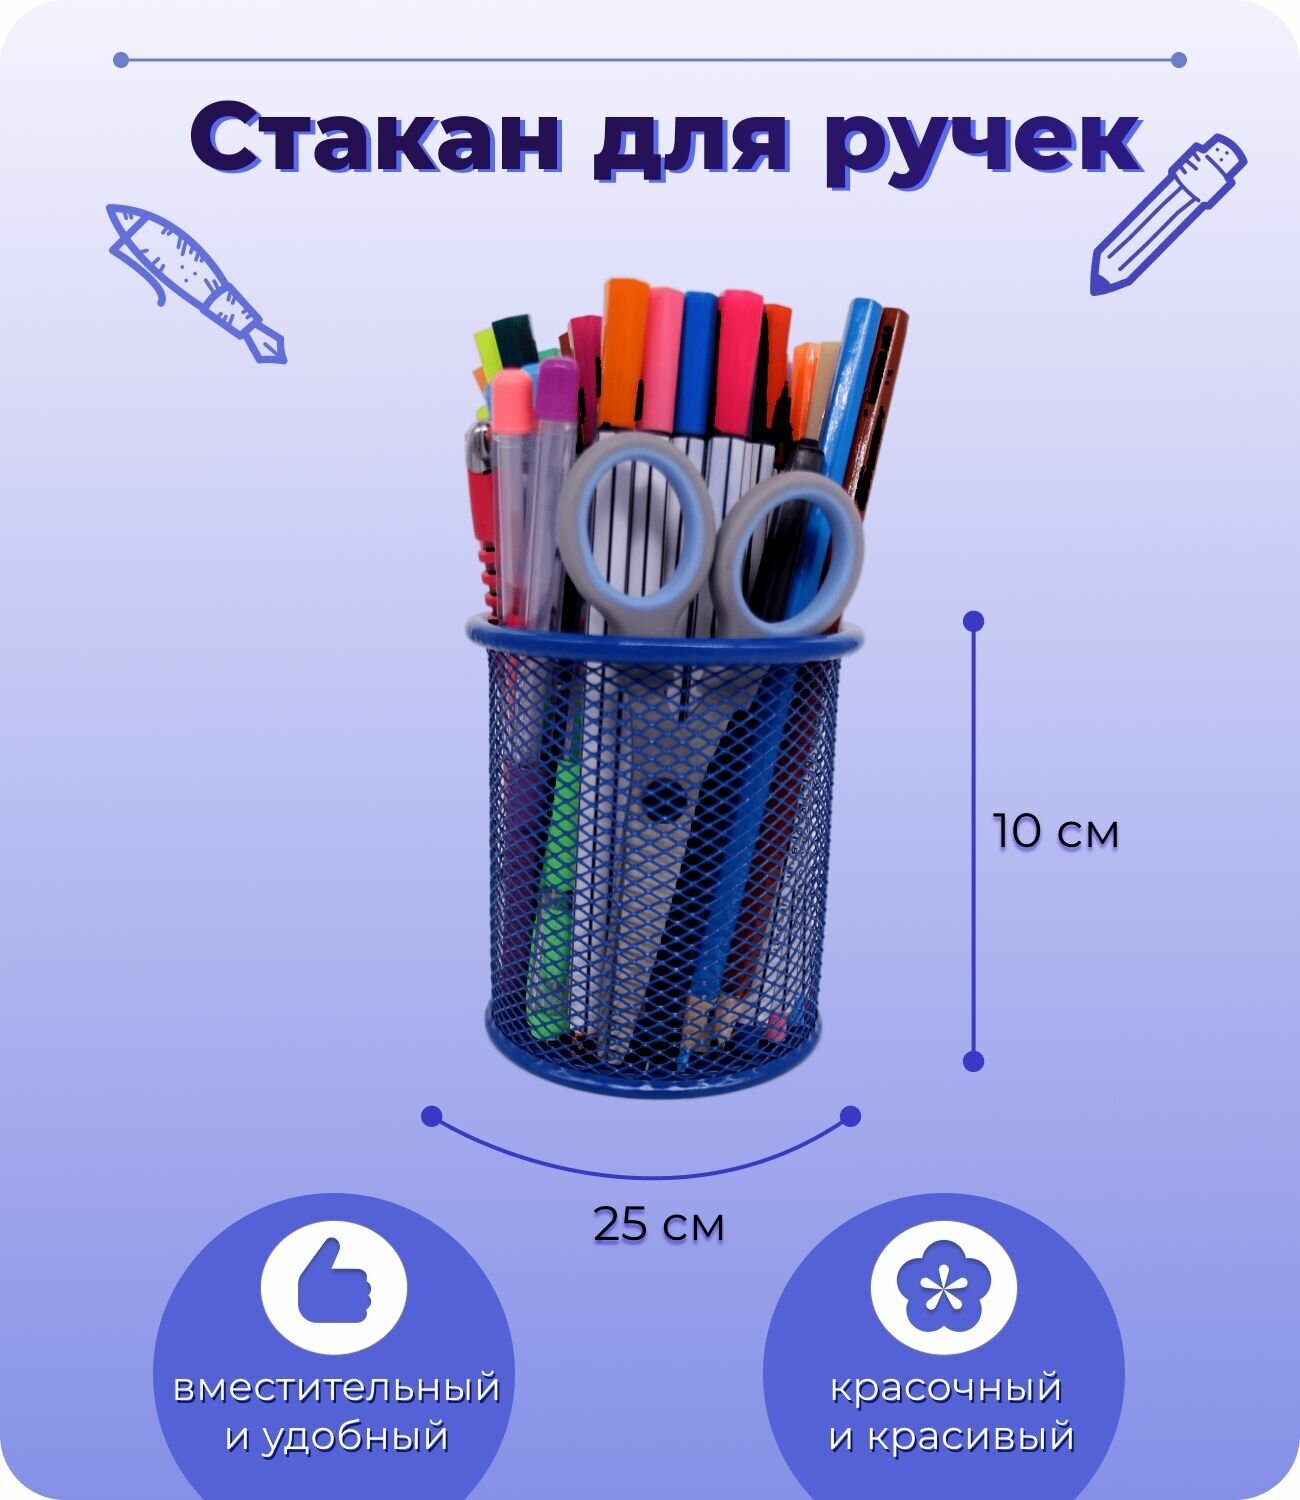 Стакан для ручек и карандашей, металлический, синий